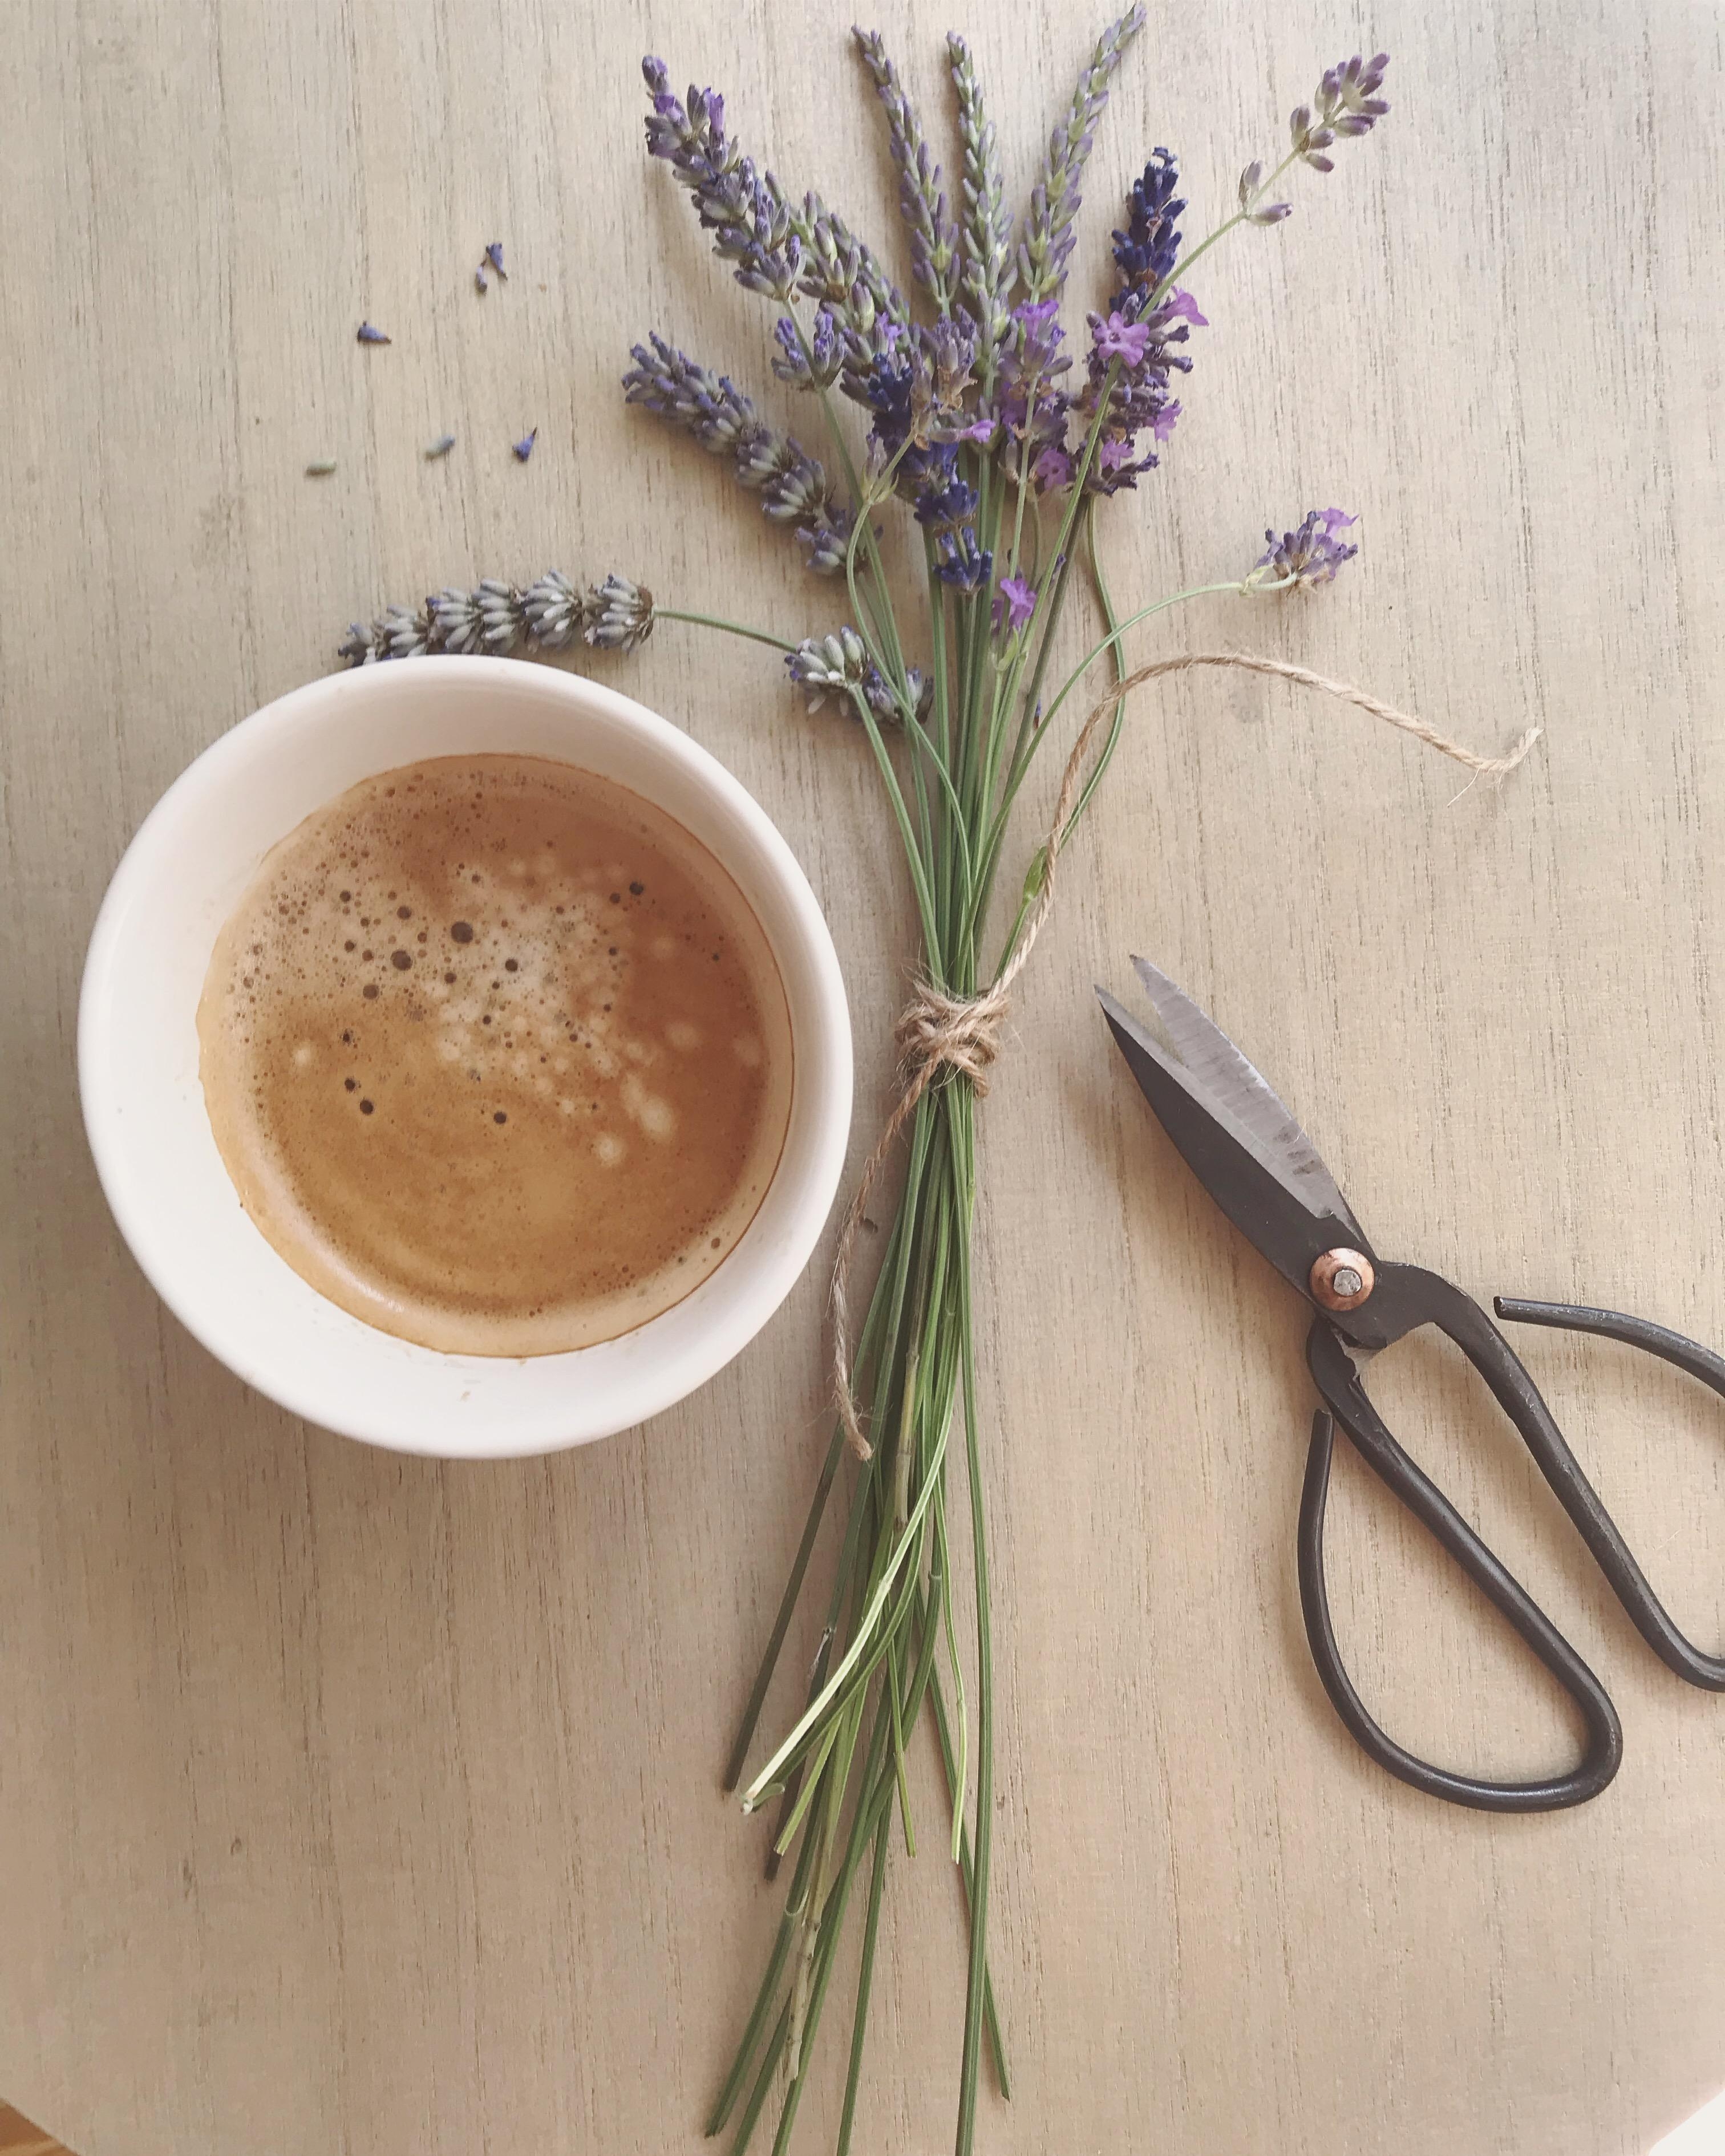 #Kaffee mit Lavendelduft, so sommerlich, so herrlich, so schön.
#lavendel#couchstyle#couchliebt#kaffeeliebe